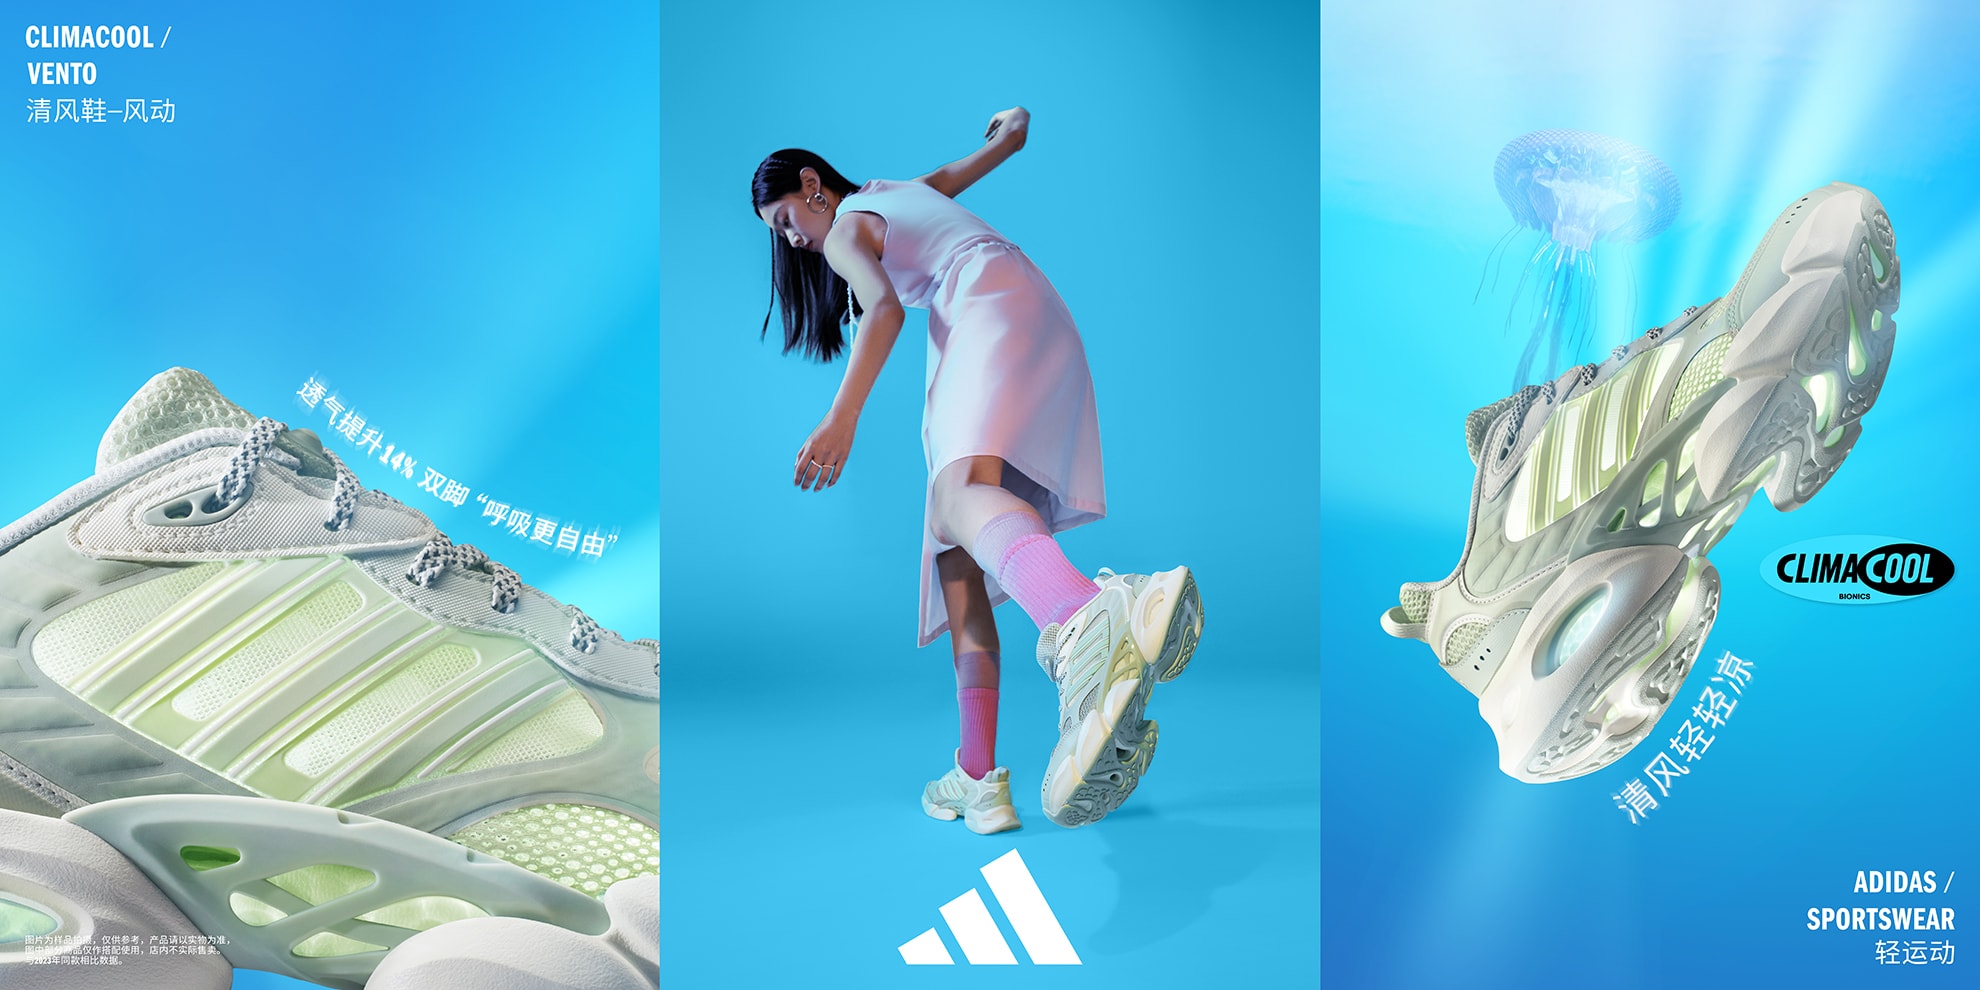 adidas Sportswear 全新 CLIMACOOL 清风系列登场